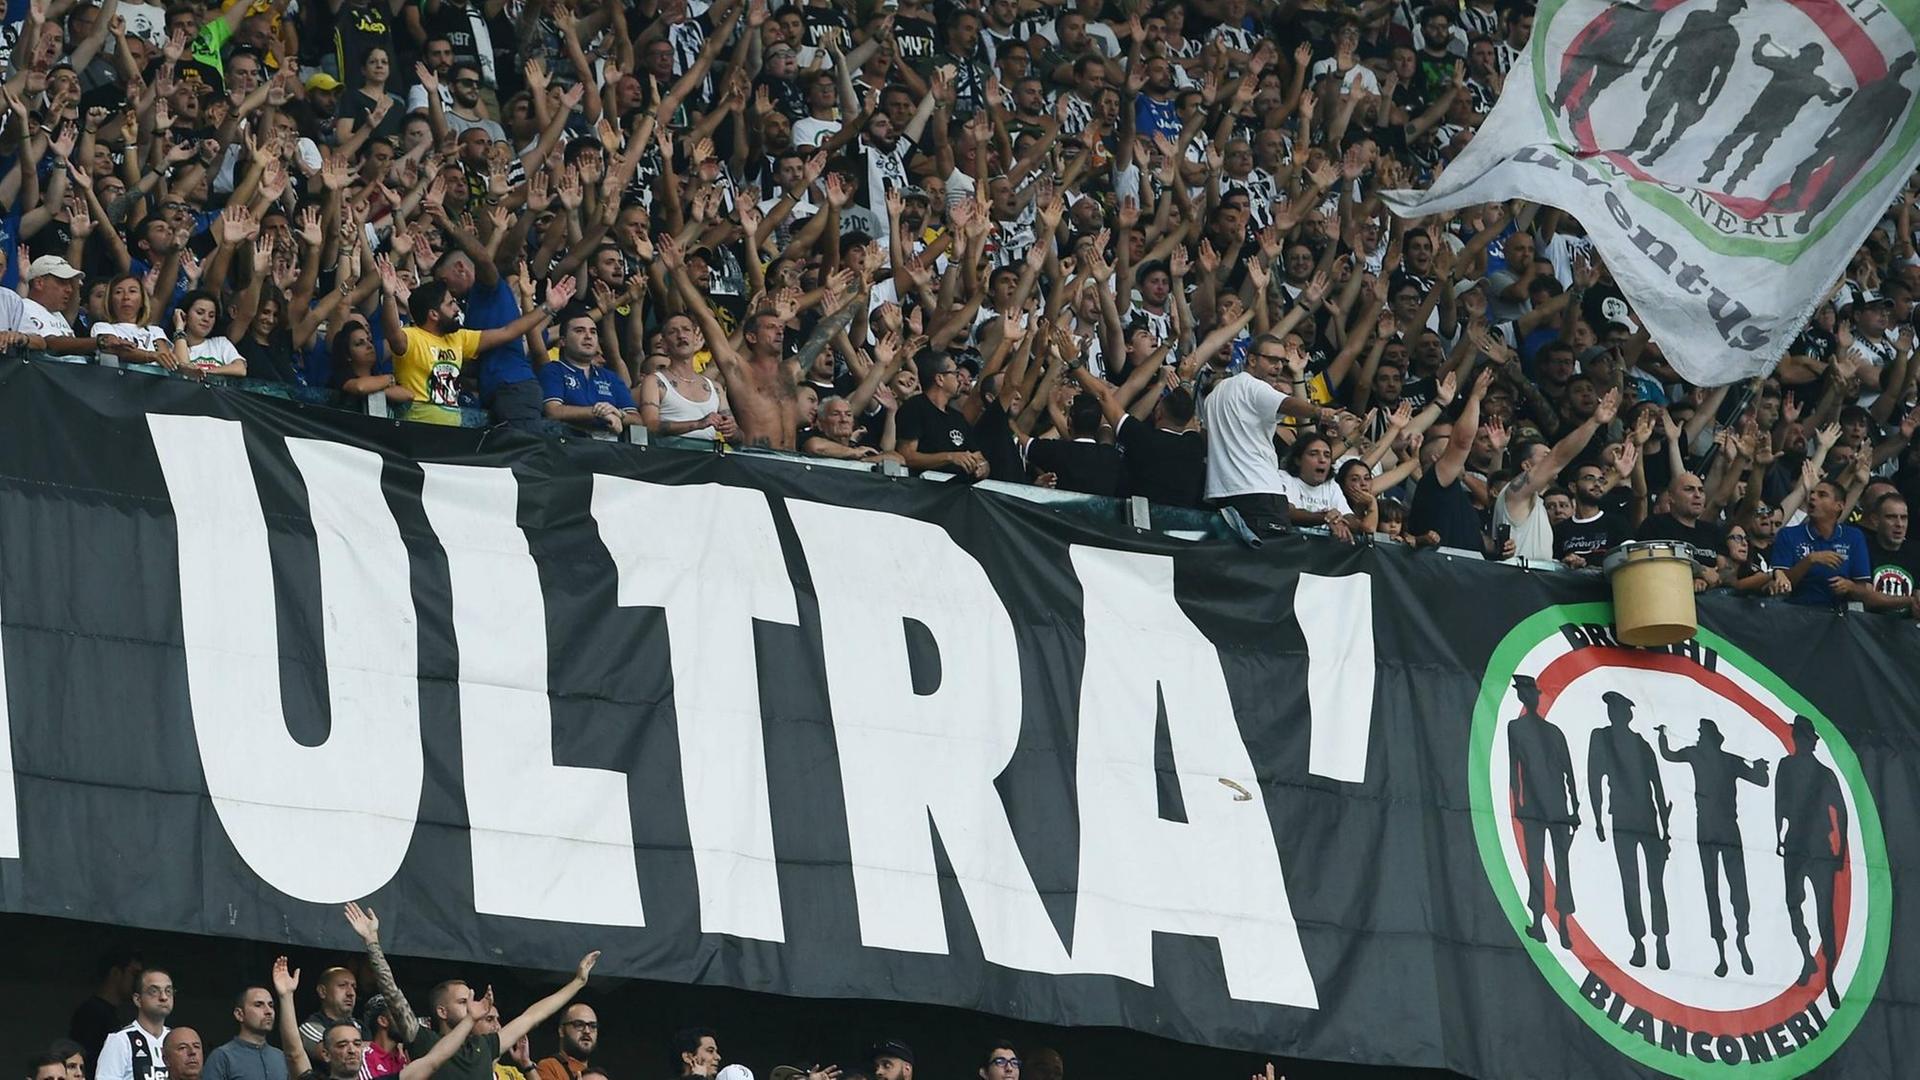 Aufnahme der Curva Sud im Stadion von Juventus Turin mit dem Plakat einer Ultra-Gruppierung bei einem Meisterschaftsspiel der italienischen Serie A